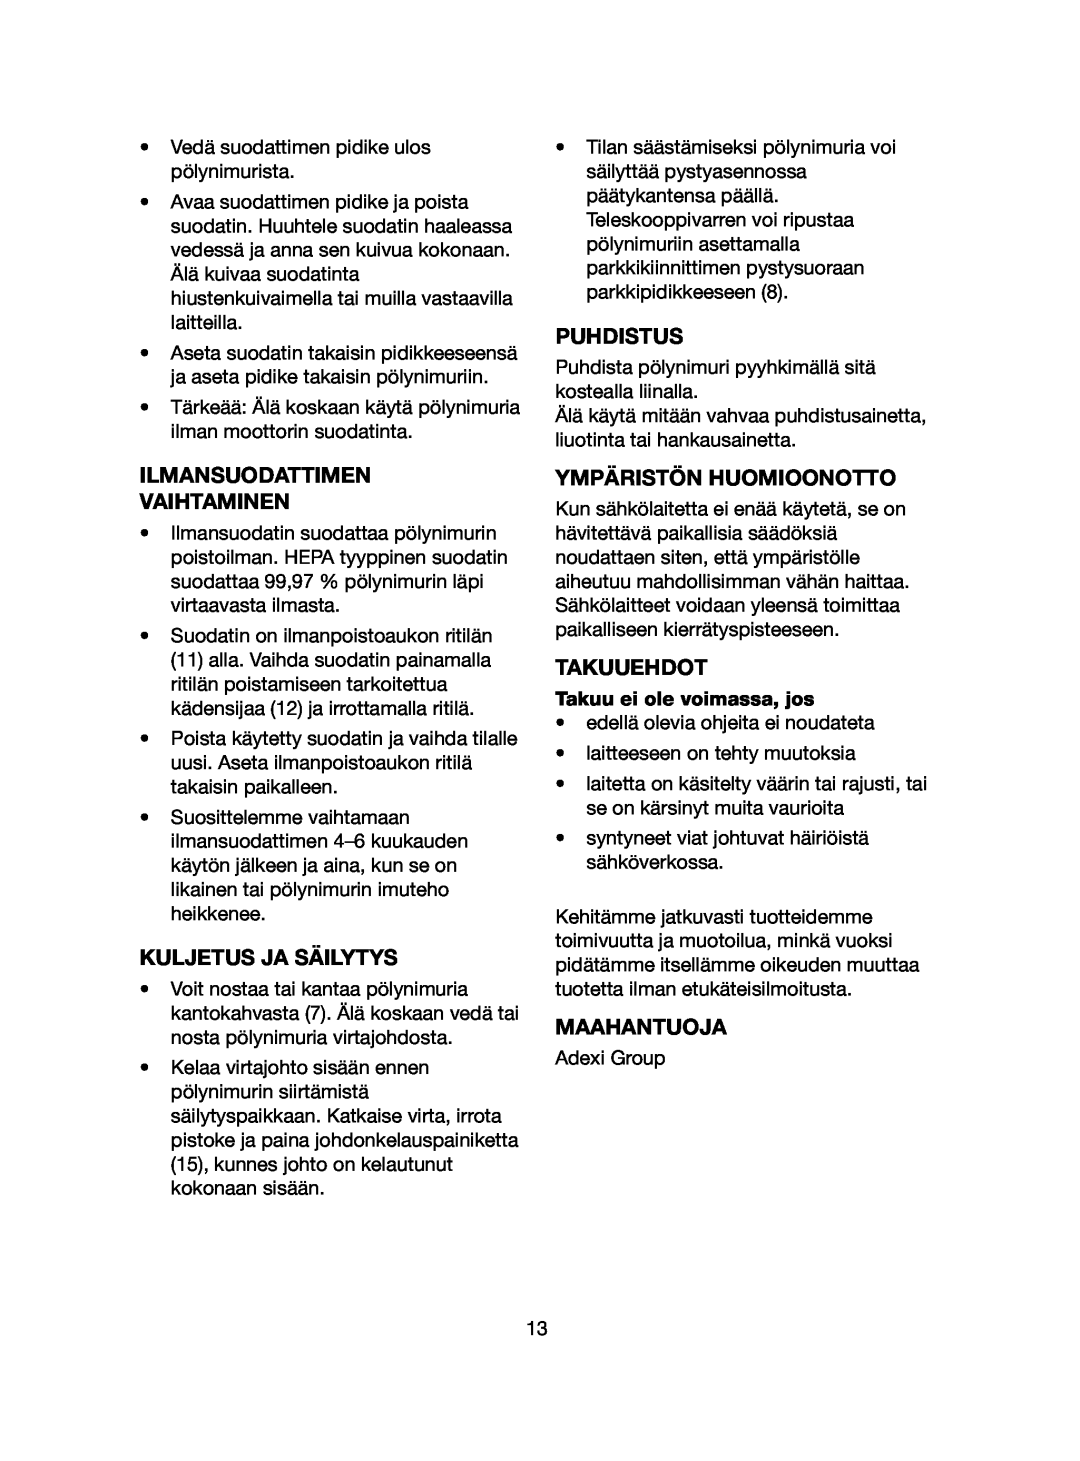 Melissa 640-061 manual Ilmansuodattimen Vaihtaminen, Kuljetus Ja Säilytys, Puhdistus, Ympäristön Huomioonotto, Takuuehdot 